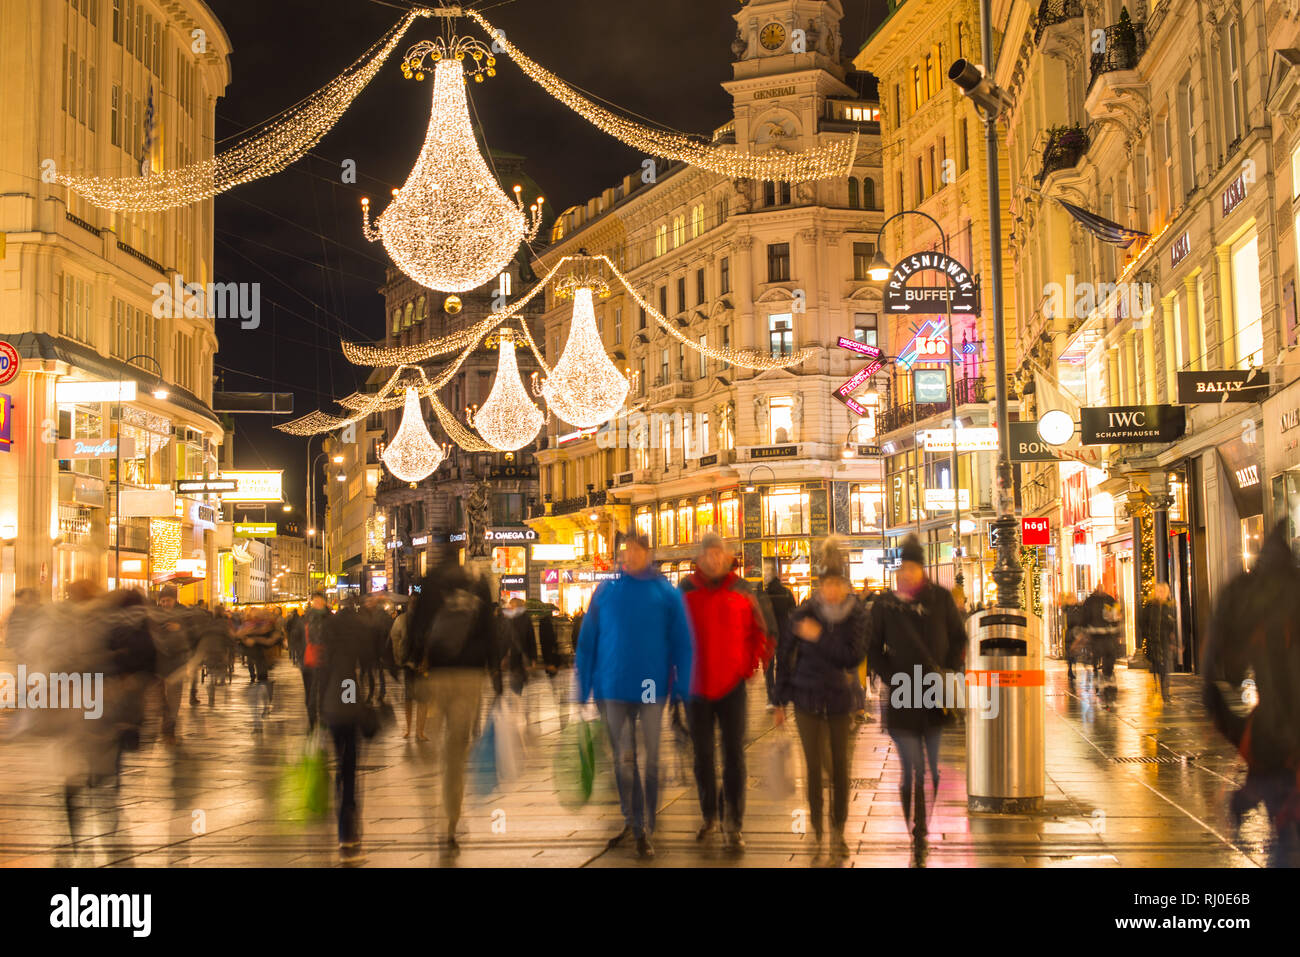 Graben at Christmas, Vienna, linking Stephanplatz with the upmarket Kohlmarkt, the Graben is one of the grandest thoroughfares in Vienna, Austria Stock Photo